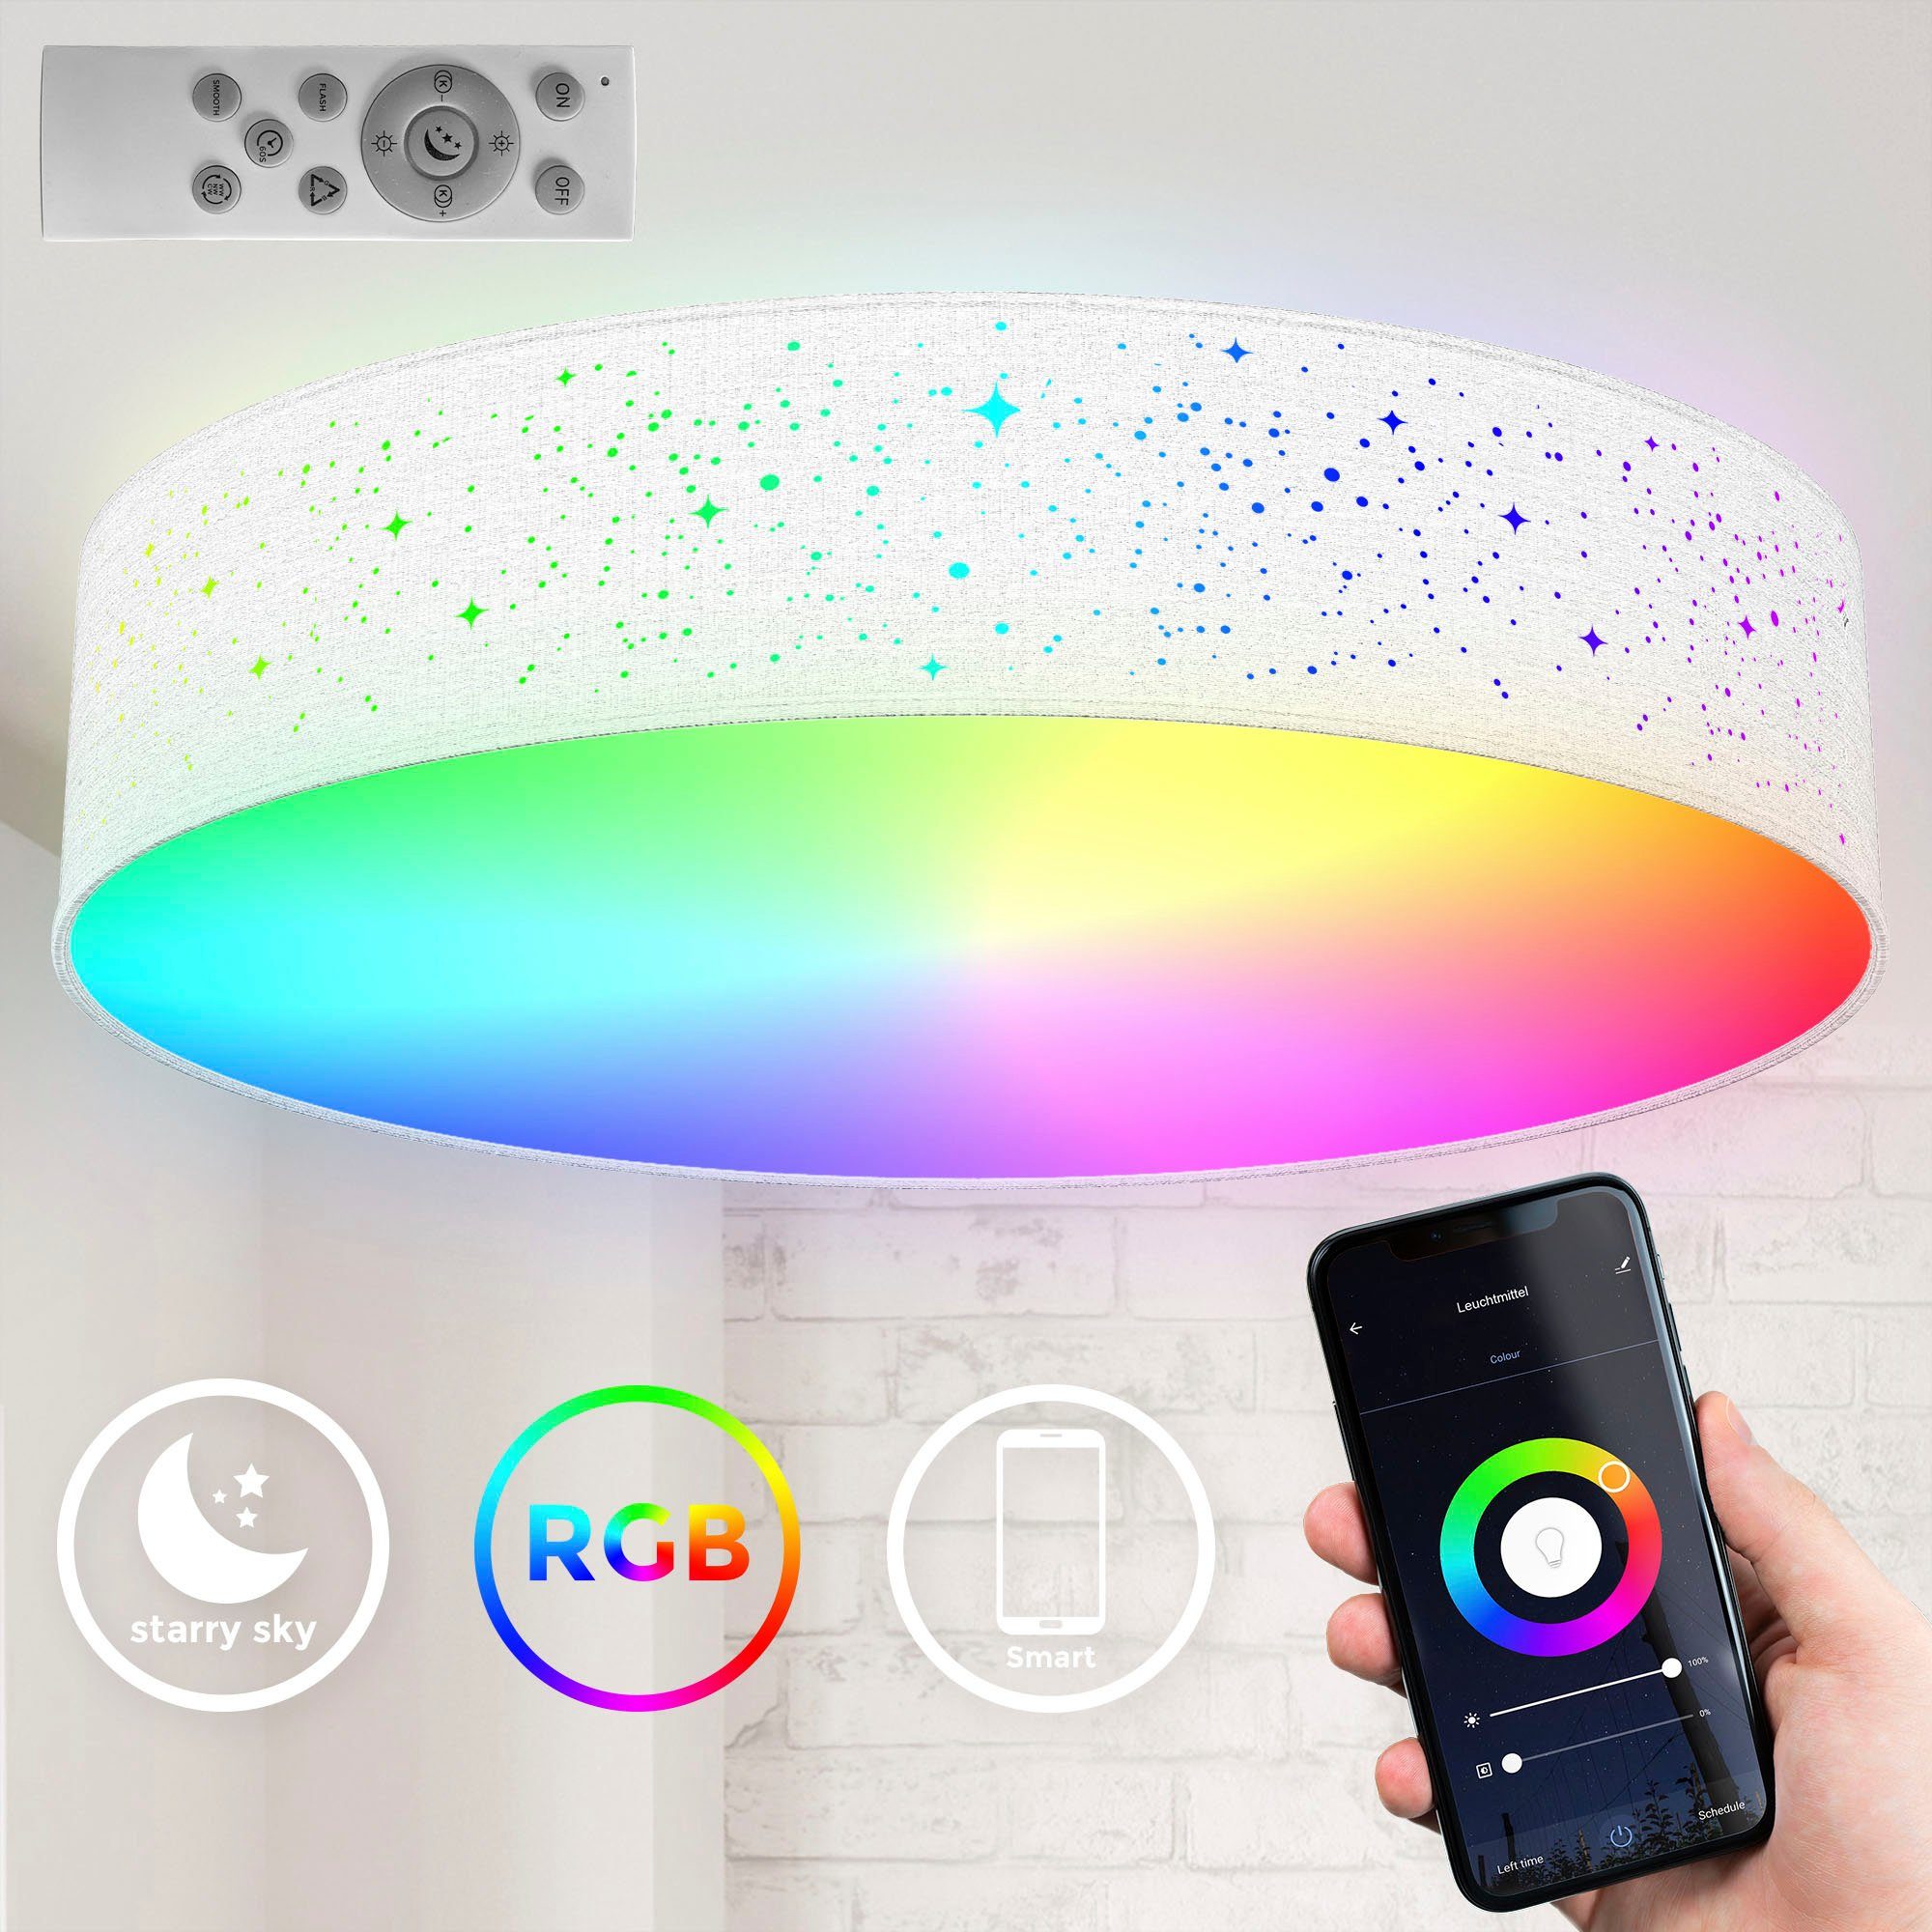 fest inkl. integriert, LED Fernbedienung, und Smart B.K.Licht WiFi Farbwechsel iOS+Andorid, Deckenlampe, Lichteffekte, APP-Steuerung, BK_SD1477 Ø49cm RGB-CCT Home, LED Deckenleuchte